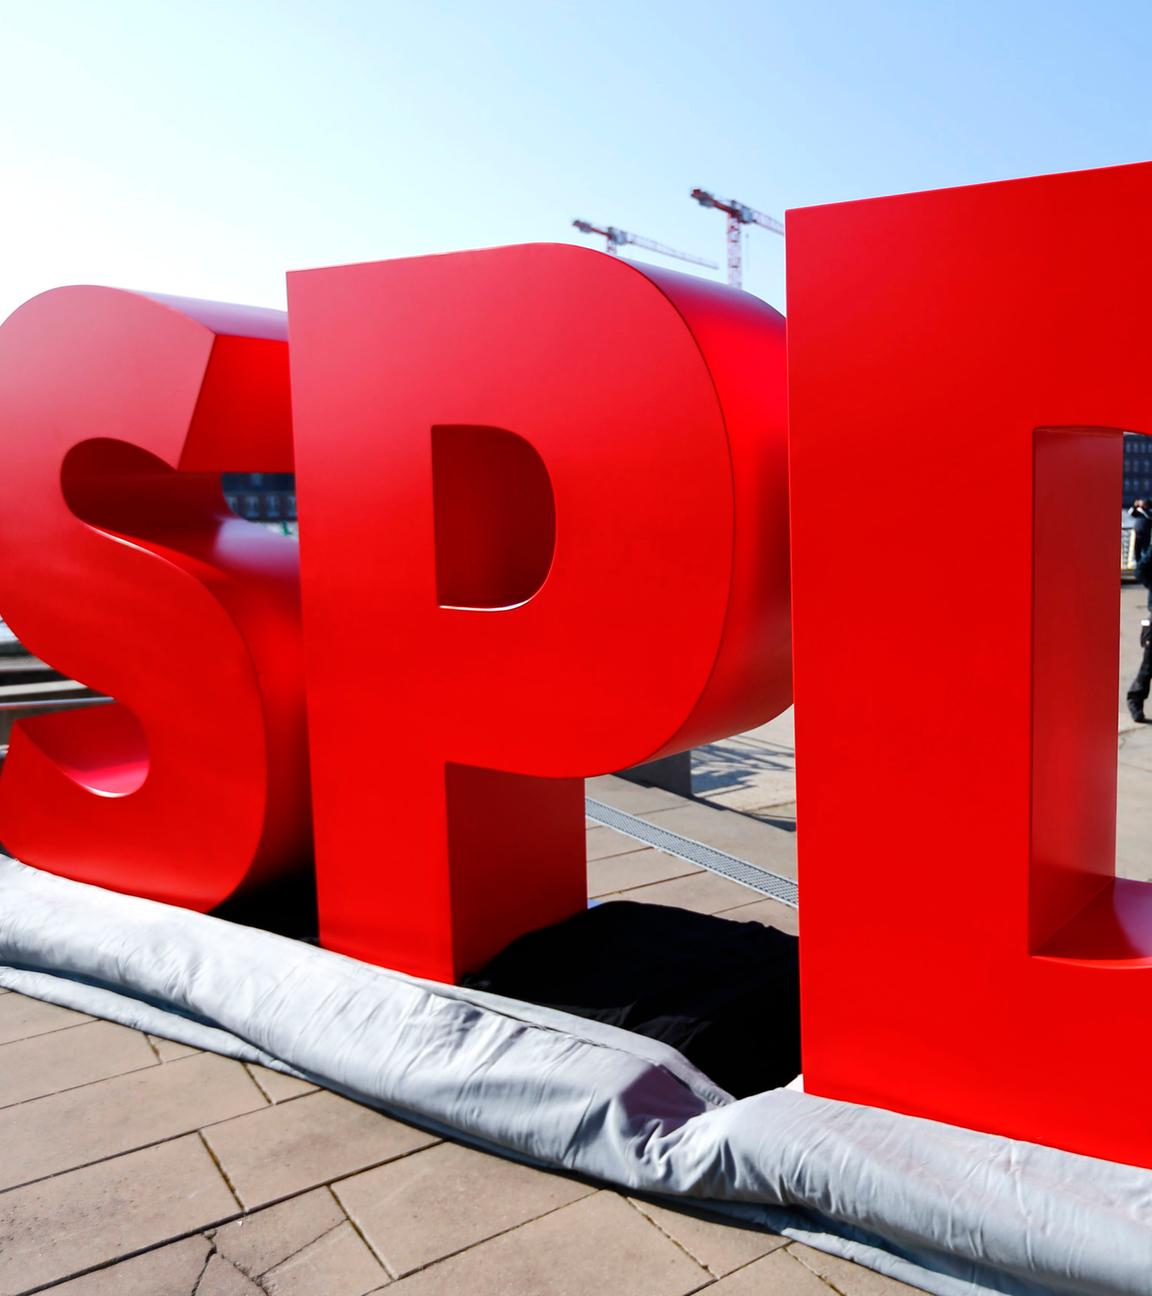 SPD-Schriftzug